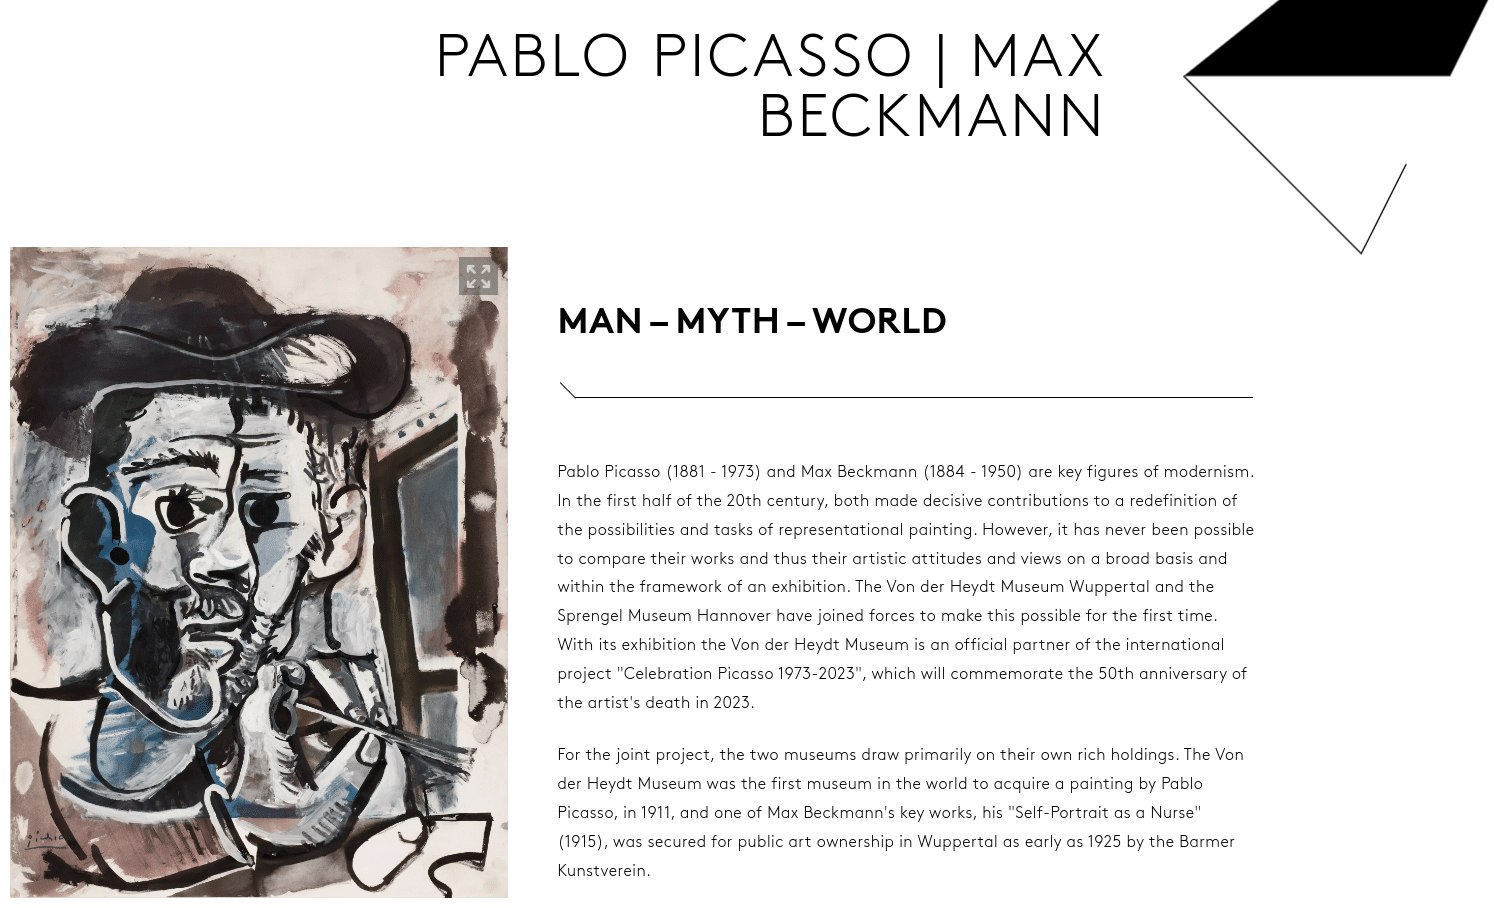 https://en.von-der-heydt-museum.de/exhibitions/pablo-picasso-max-beckmann/